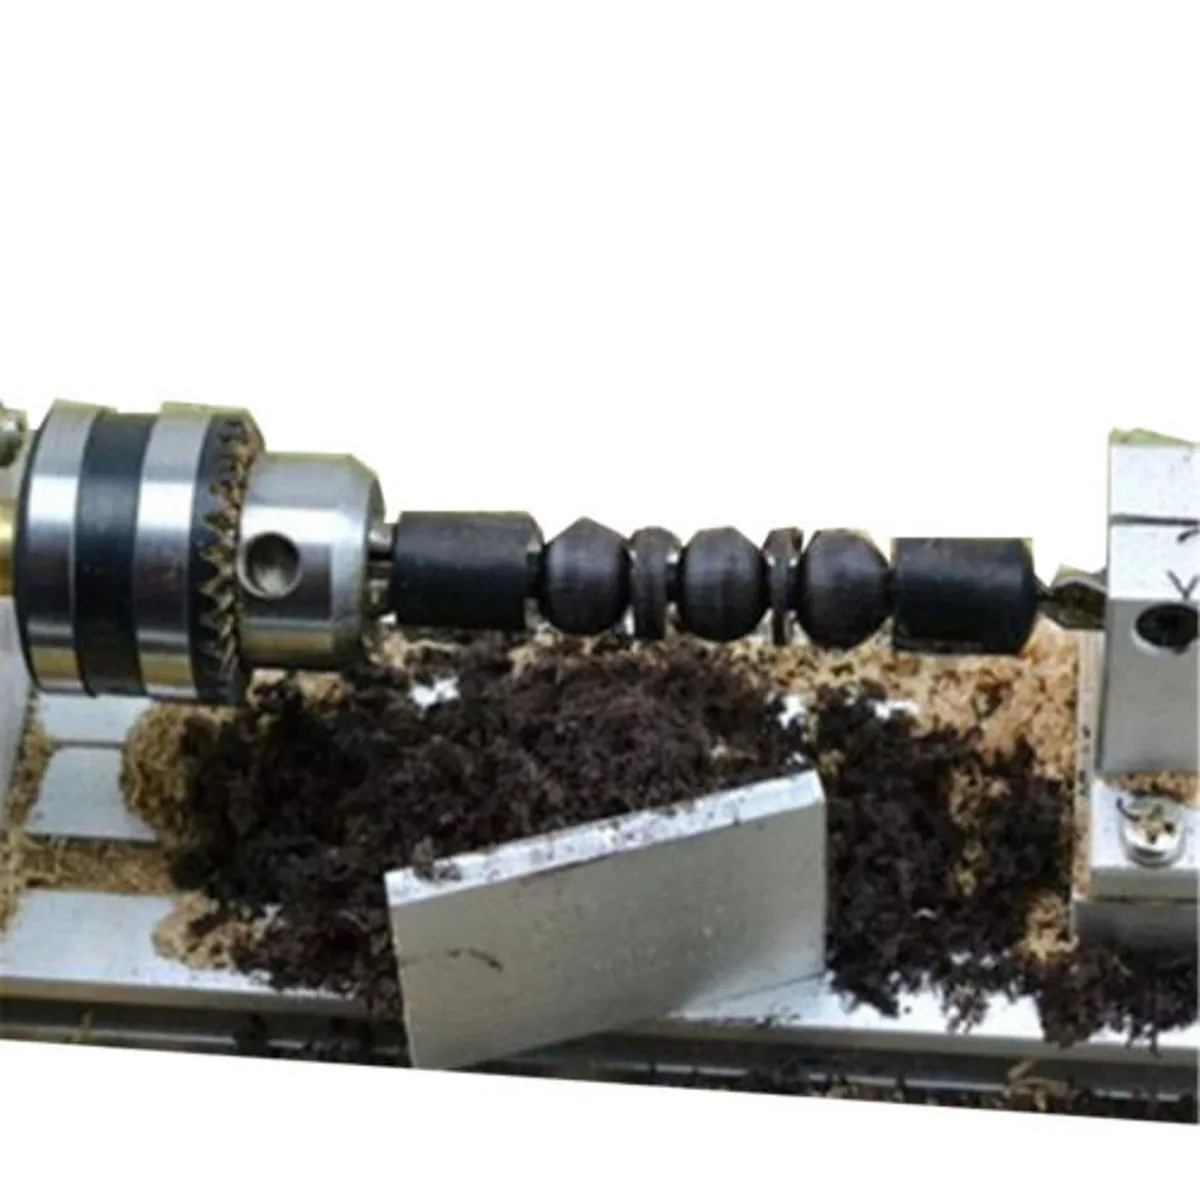 Мини токарный станок для бусин деревообрабатывающий DIY токарный станок для полировки резки мини-дрель роторный инструмент стандартный набор с питанием DC 24 В